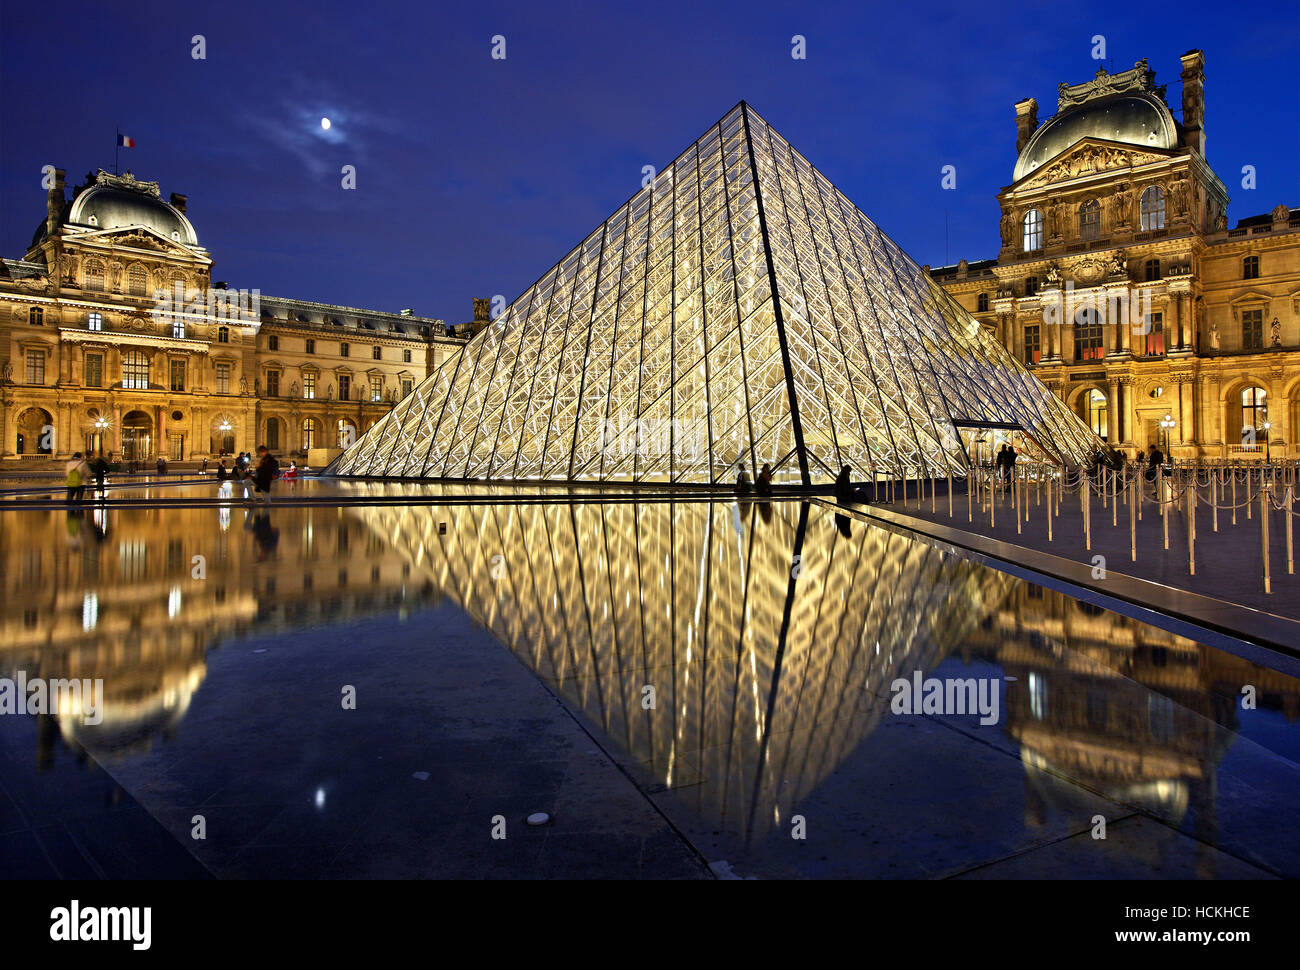 The glass pyramid (architect: I.M. Pei) of Louvre museum (Musée du Louvre), Paris, France. Stock Photo